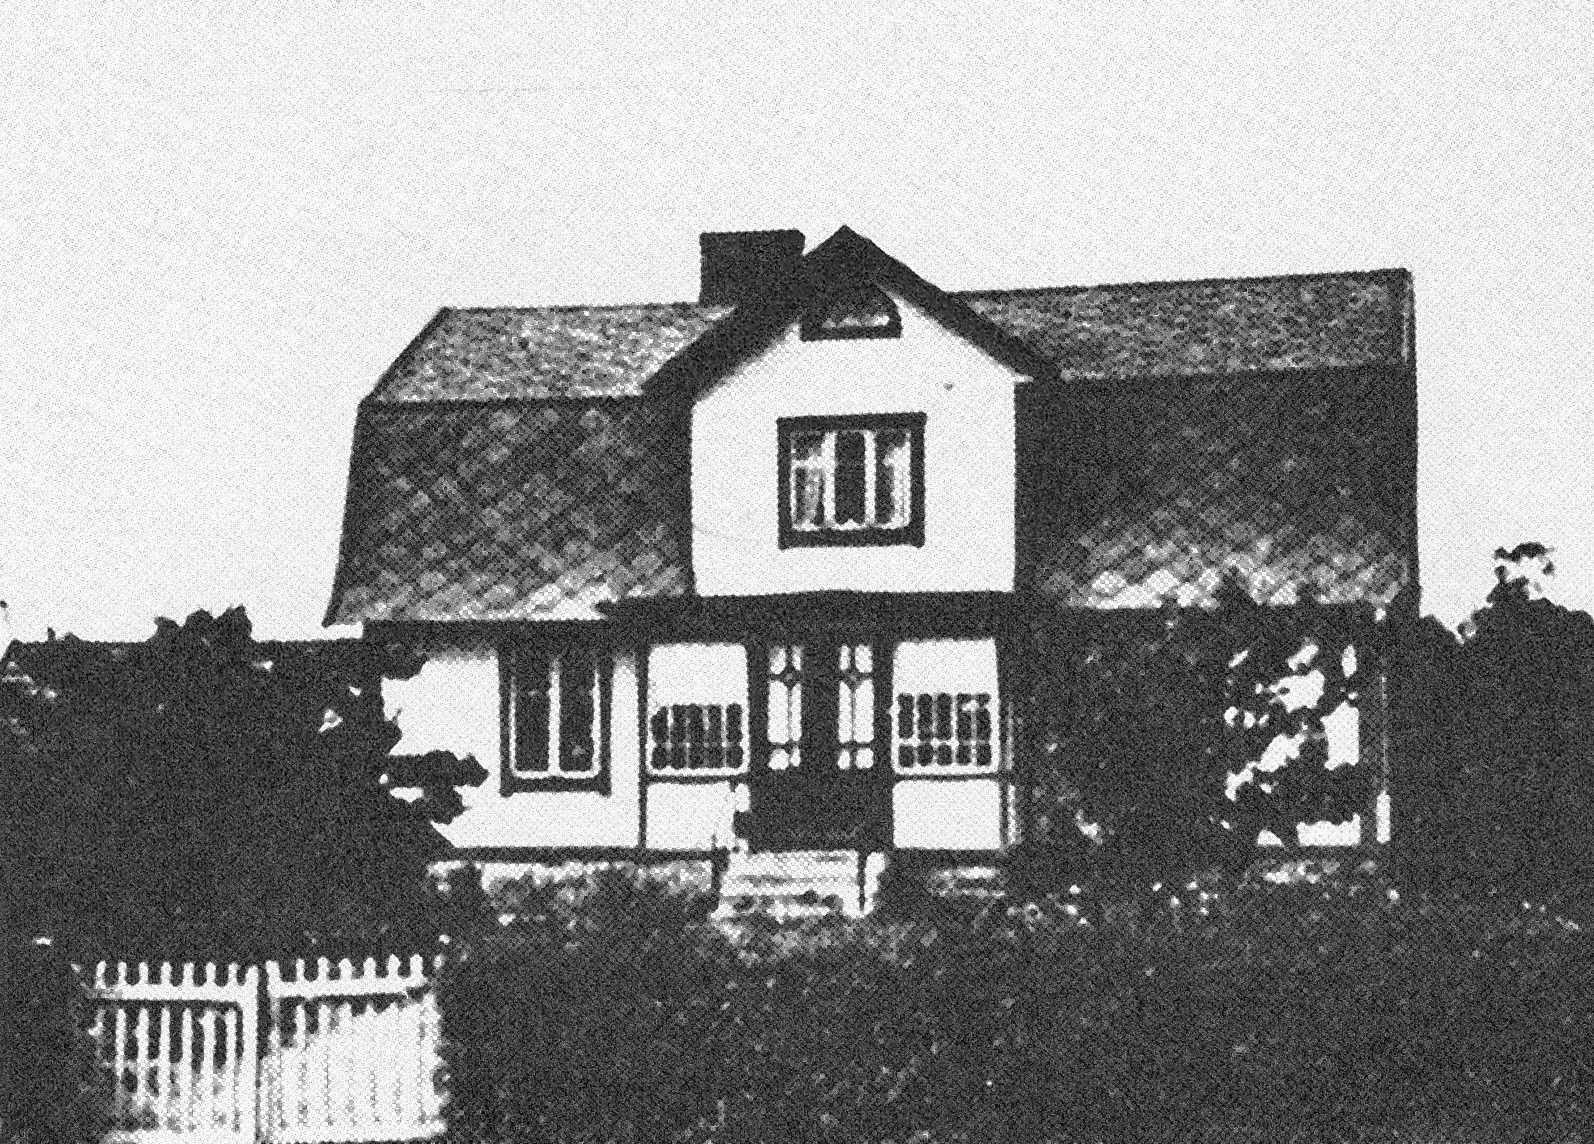 Firma Alfred Anderssons smidesverkstad i Truseryd. Fotot hÃ¤mtat frÃ¥n Sveriges Bebyggelse.

